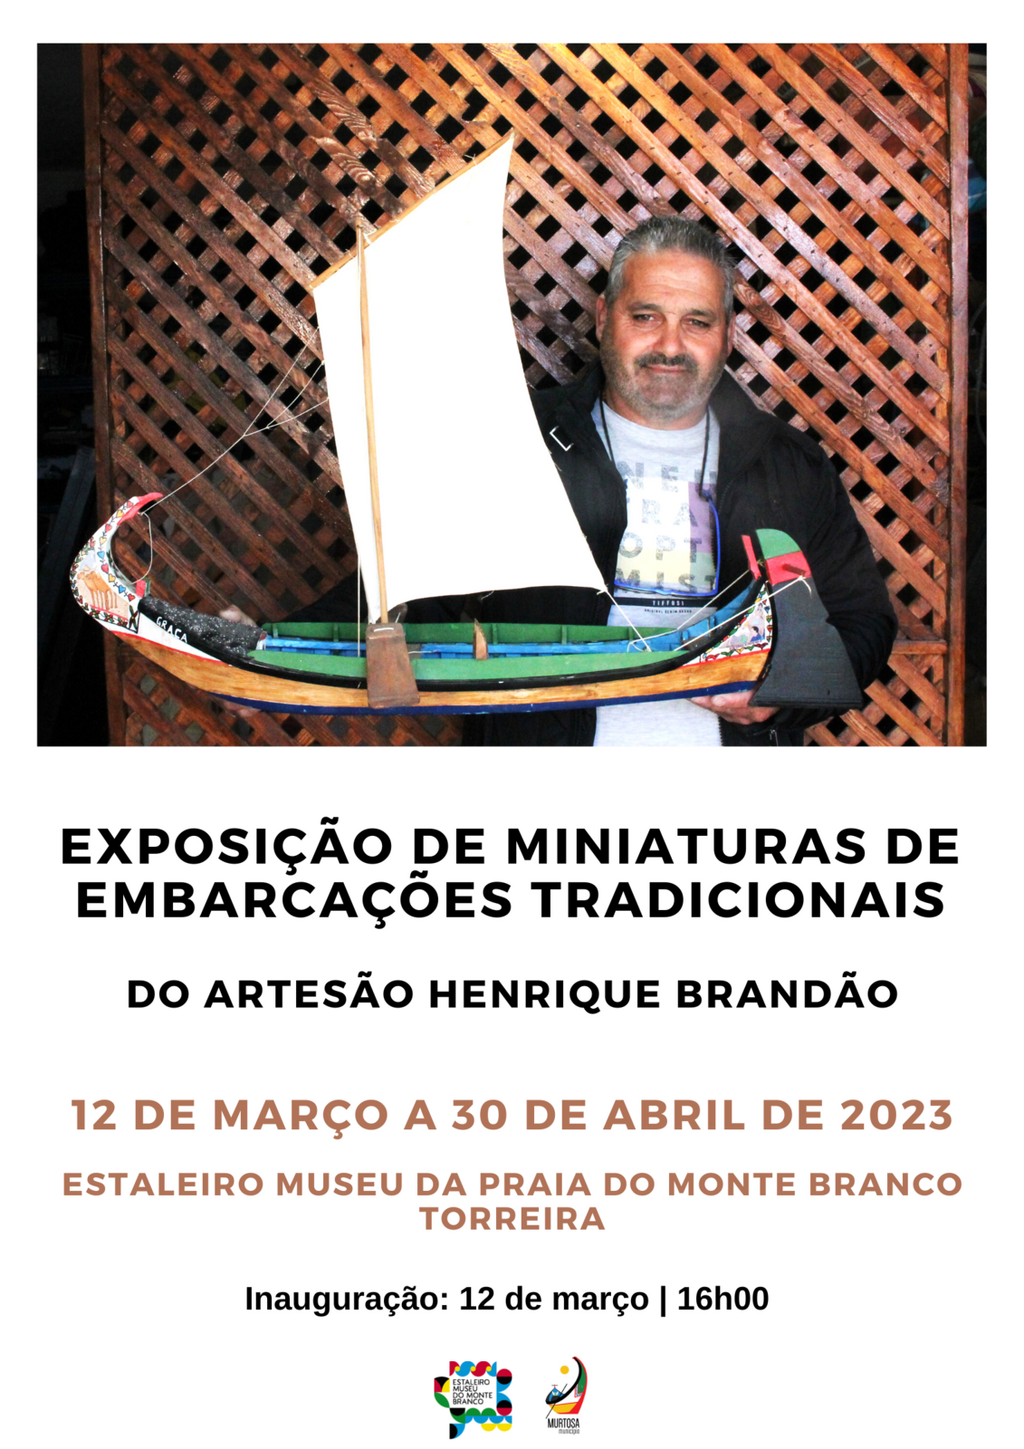 Exposição de Henrique Brandão